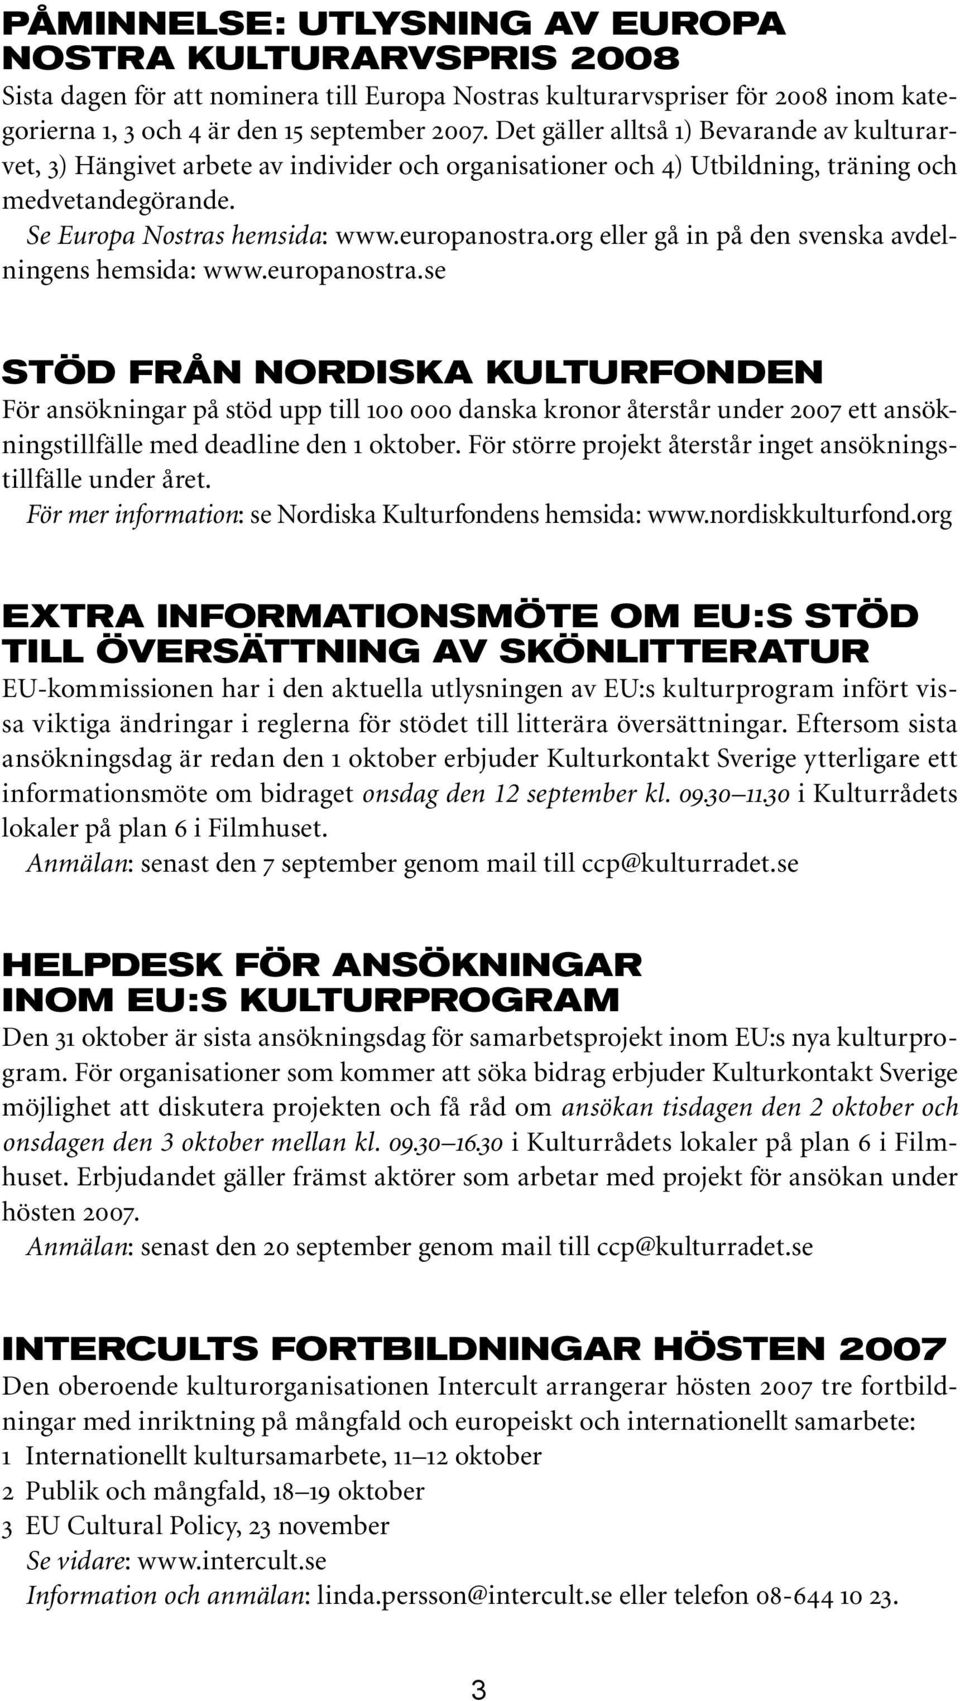 org eller gå in på den svenska avdelningens hemsida: www.europanostra.